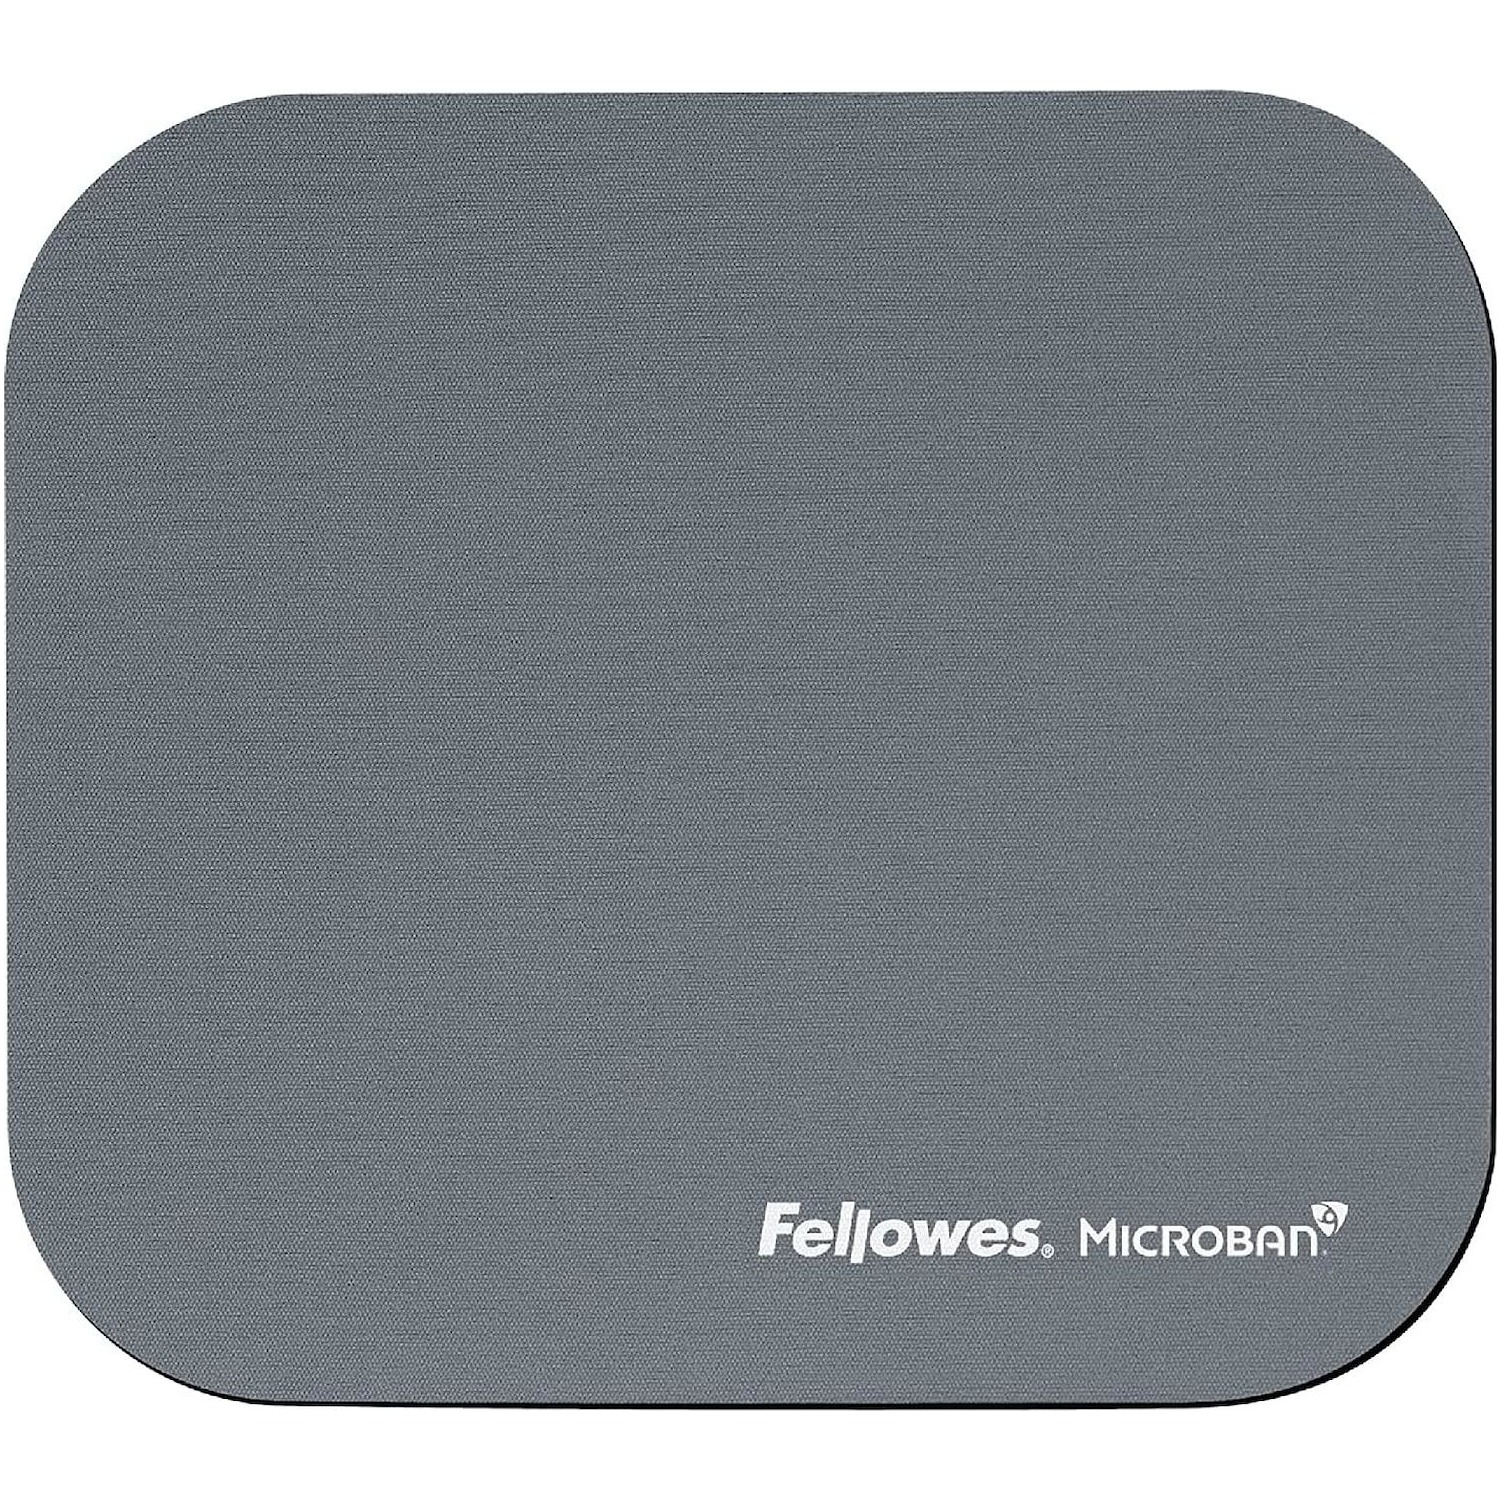 Immagine per Mouse Pad Fellowes antibatterico con microban     silver da DIMOStore